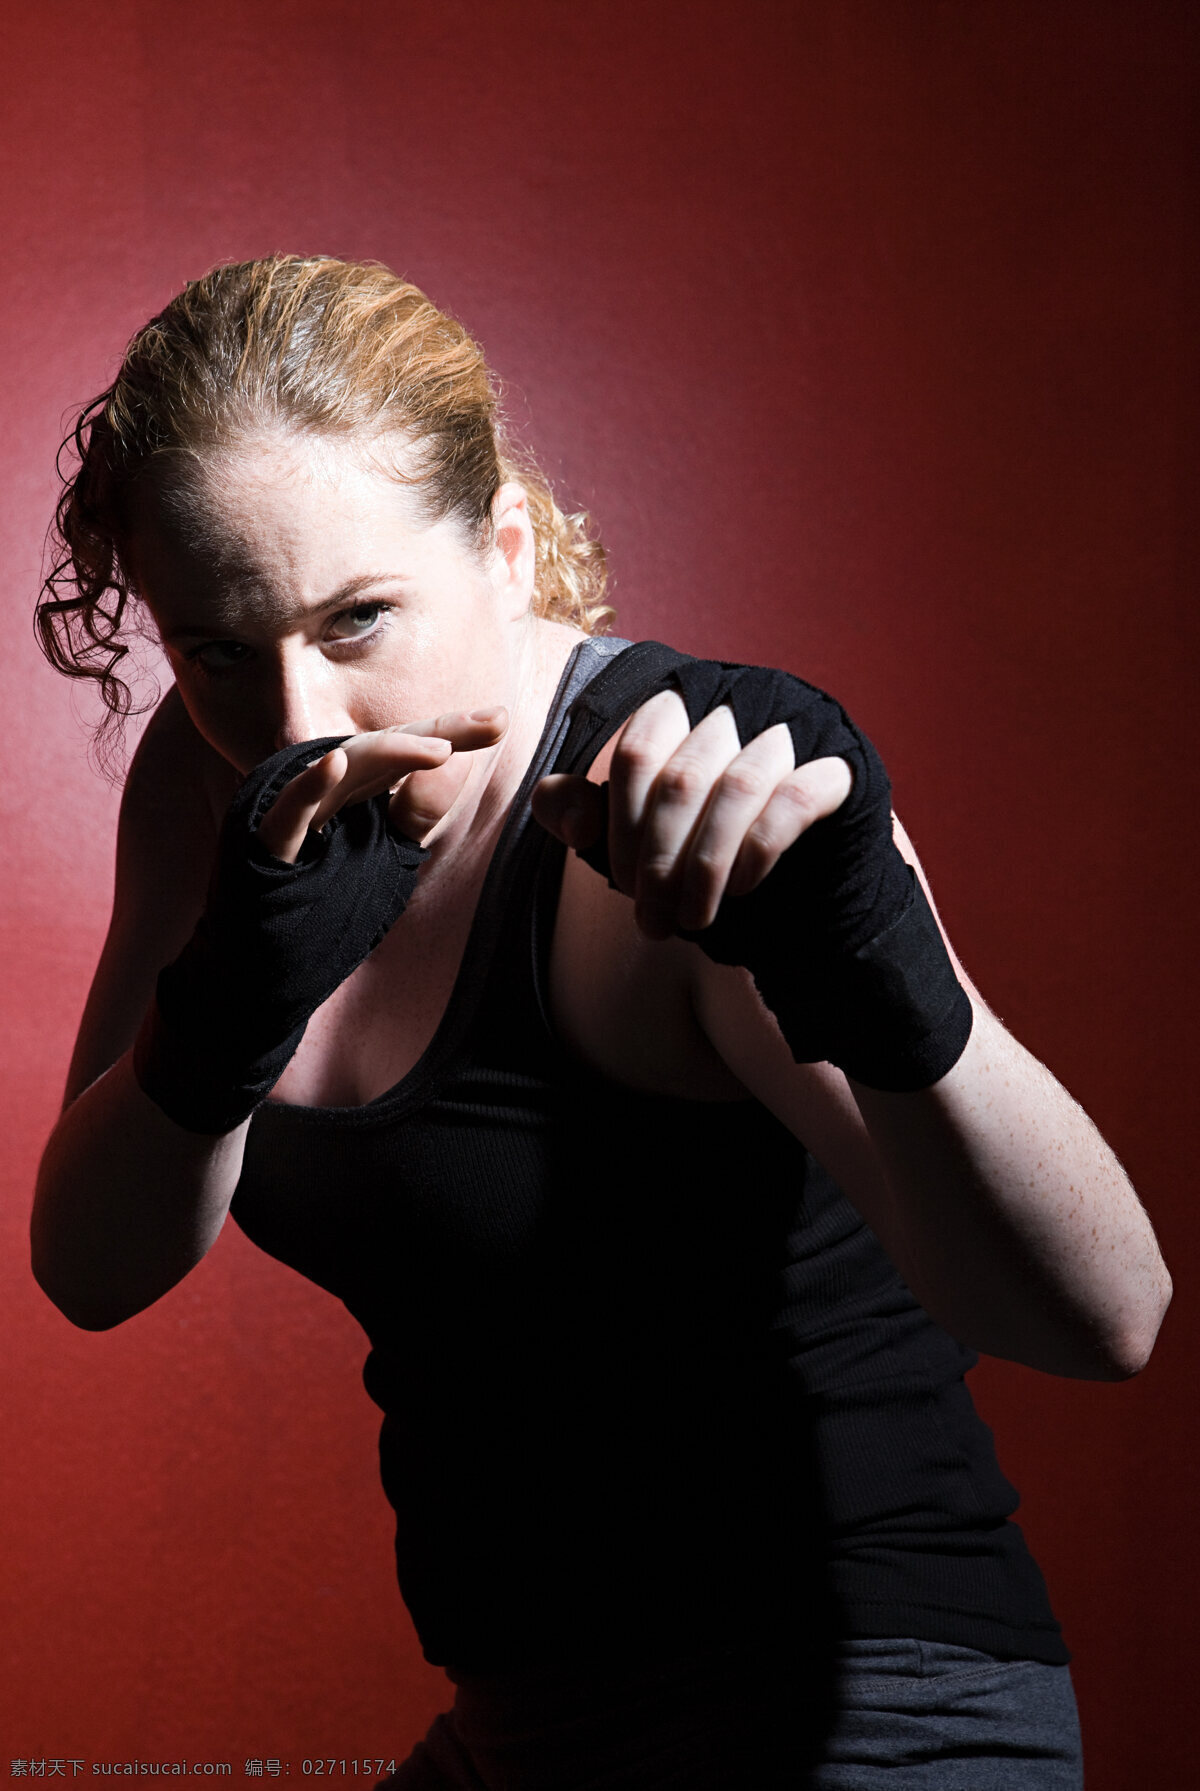 做 搏击 姿势 女 拳击手 仇视 凶狠 较量 比赛 女性 暴力 拳击 运动 运动员 拳击运动 高清图片 商务人士 人物图片